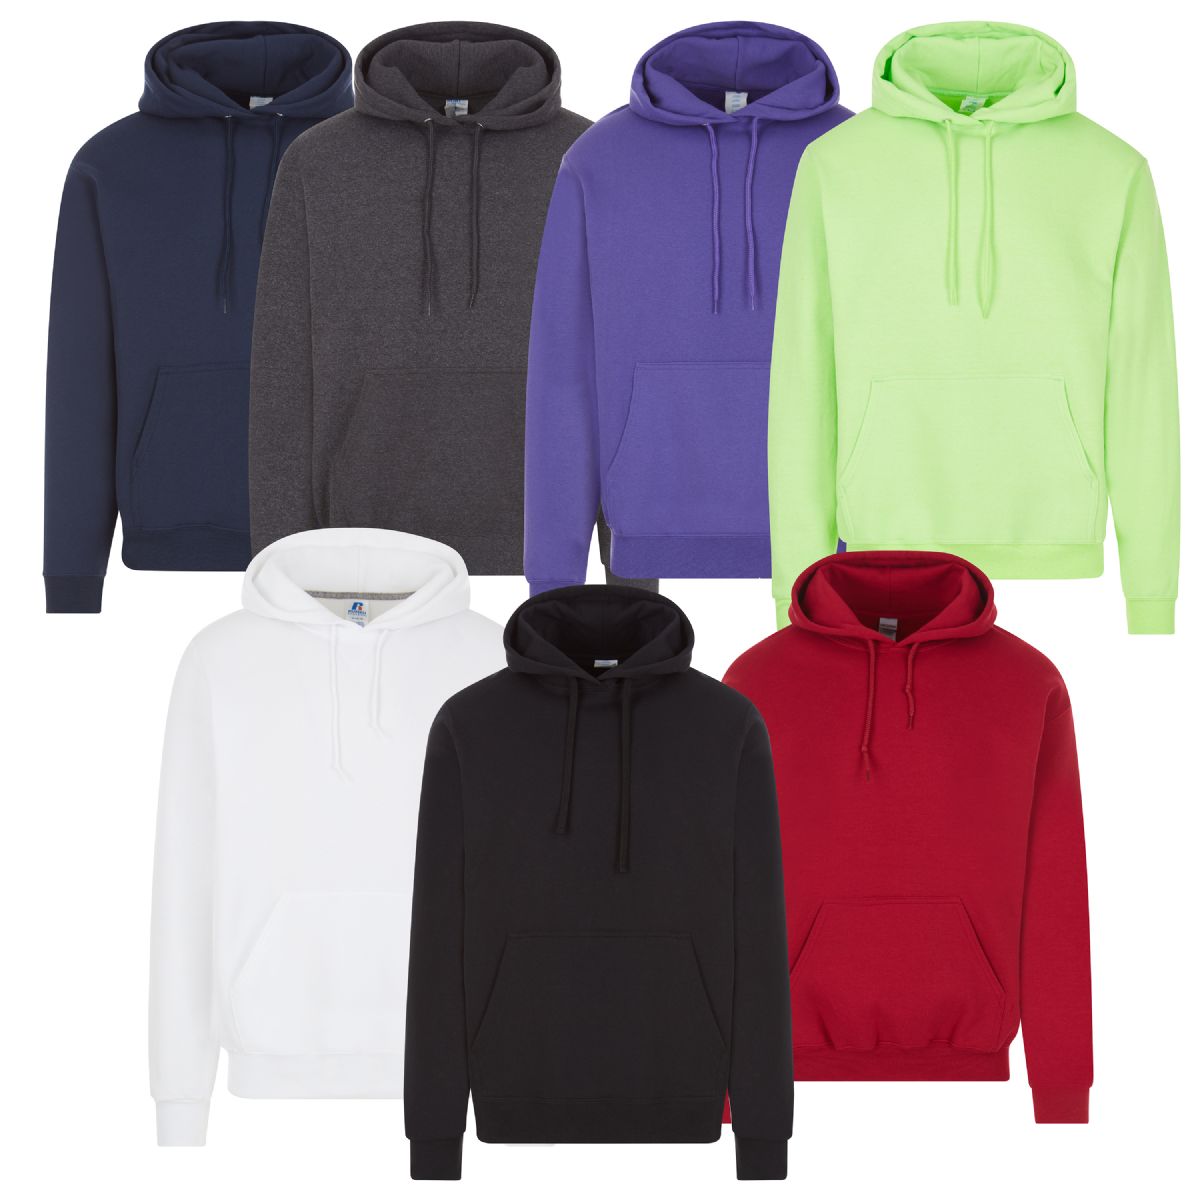 24 Pieces of Unisex Irregular Cotton Hoodie Sweatshirt In Assorted Colors 4xlarge